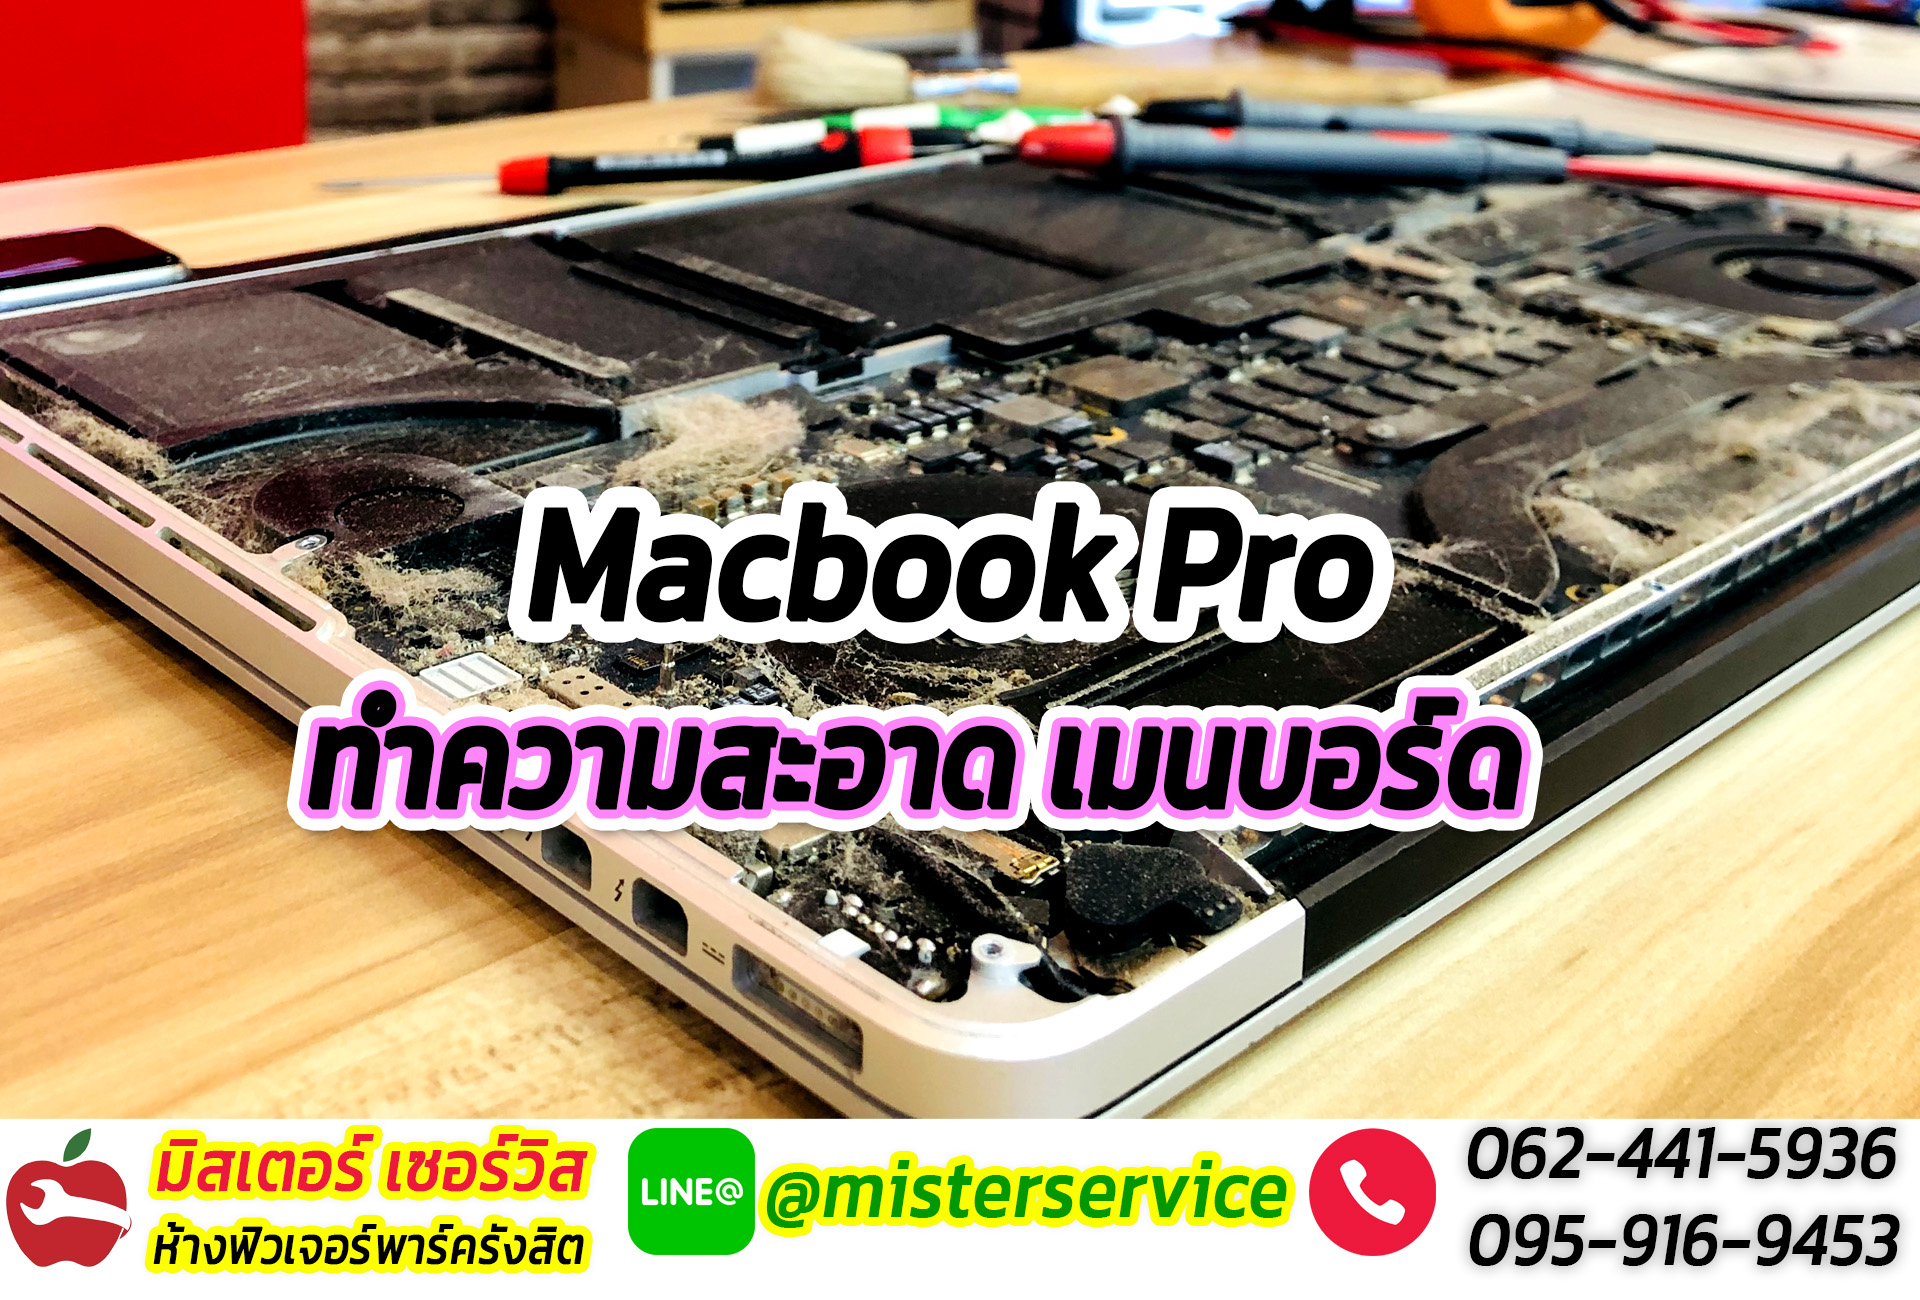 ซ่อมmacbook เมืองทองธานี